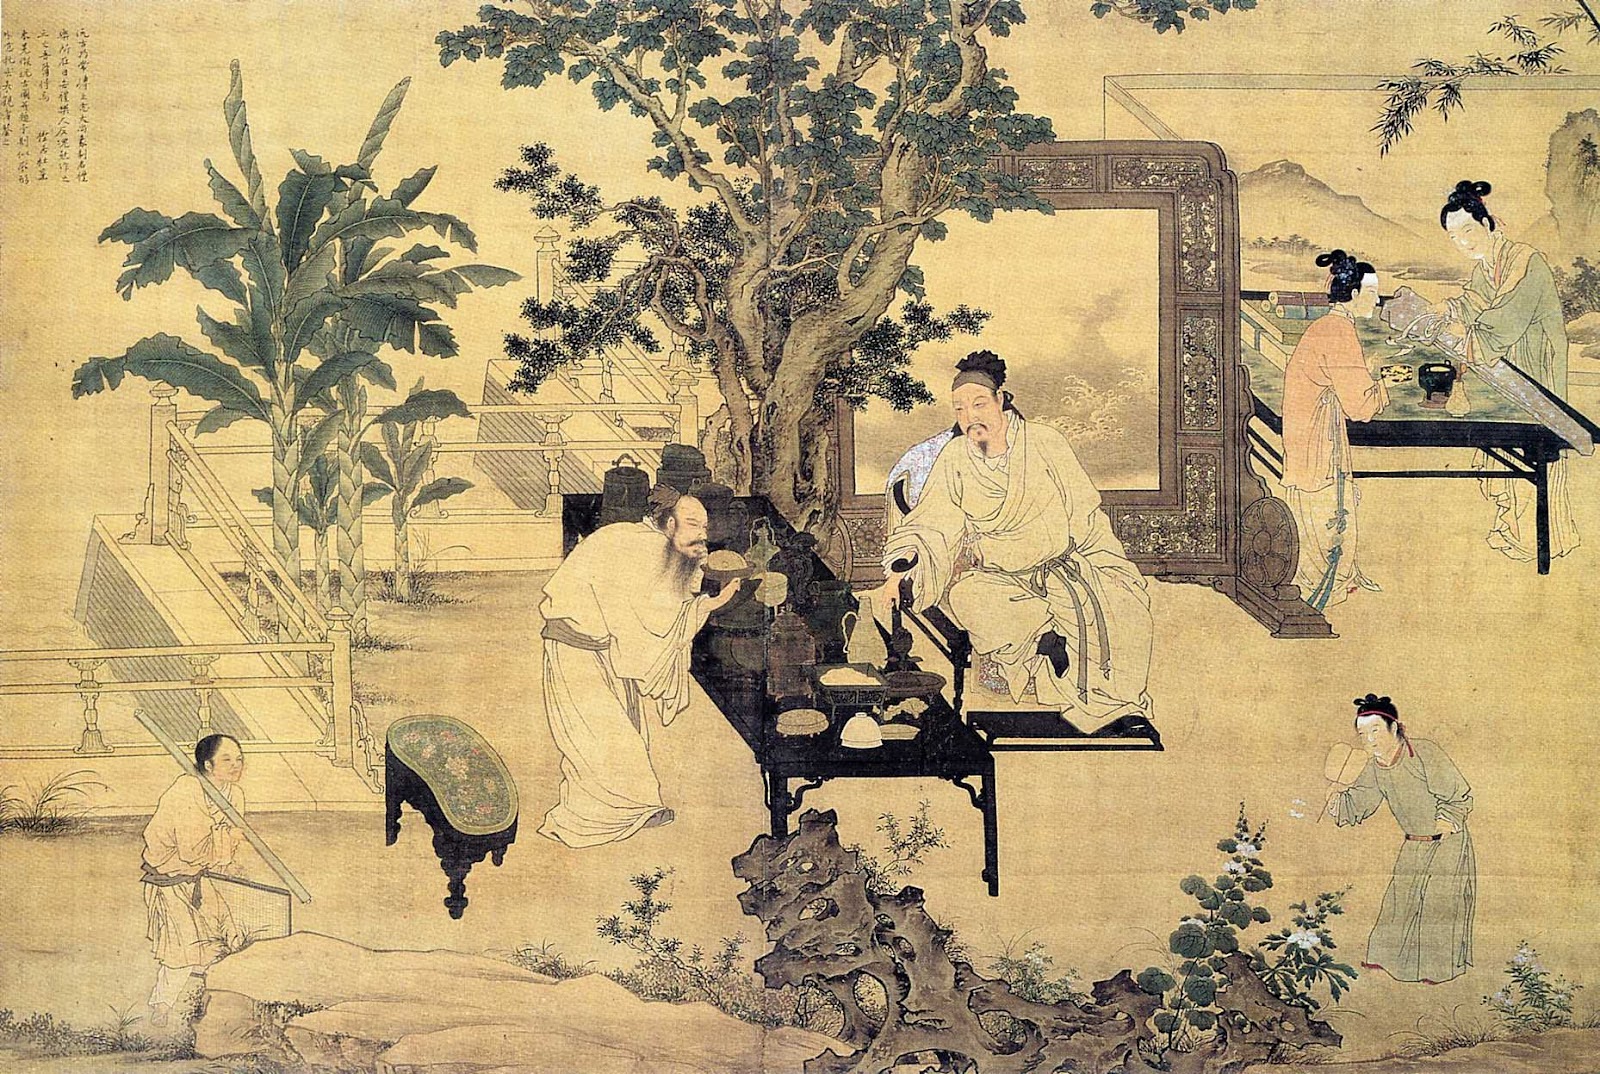 L'antico medico ed erborista cinese Sun Simiao disse che la virtù era la chiave per la salute e la longevità. (Immagine: Larry Koester tramite Flickr CC BY 2.0)